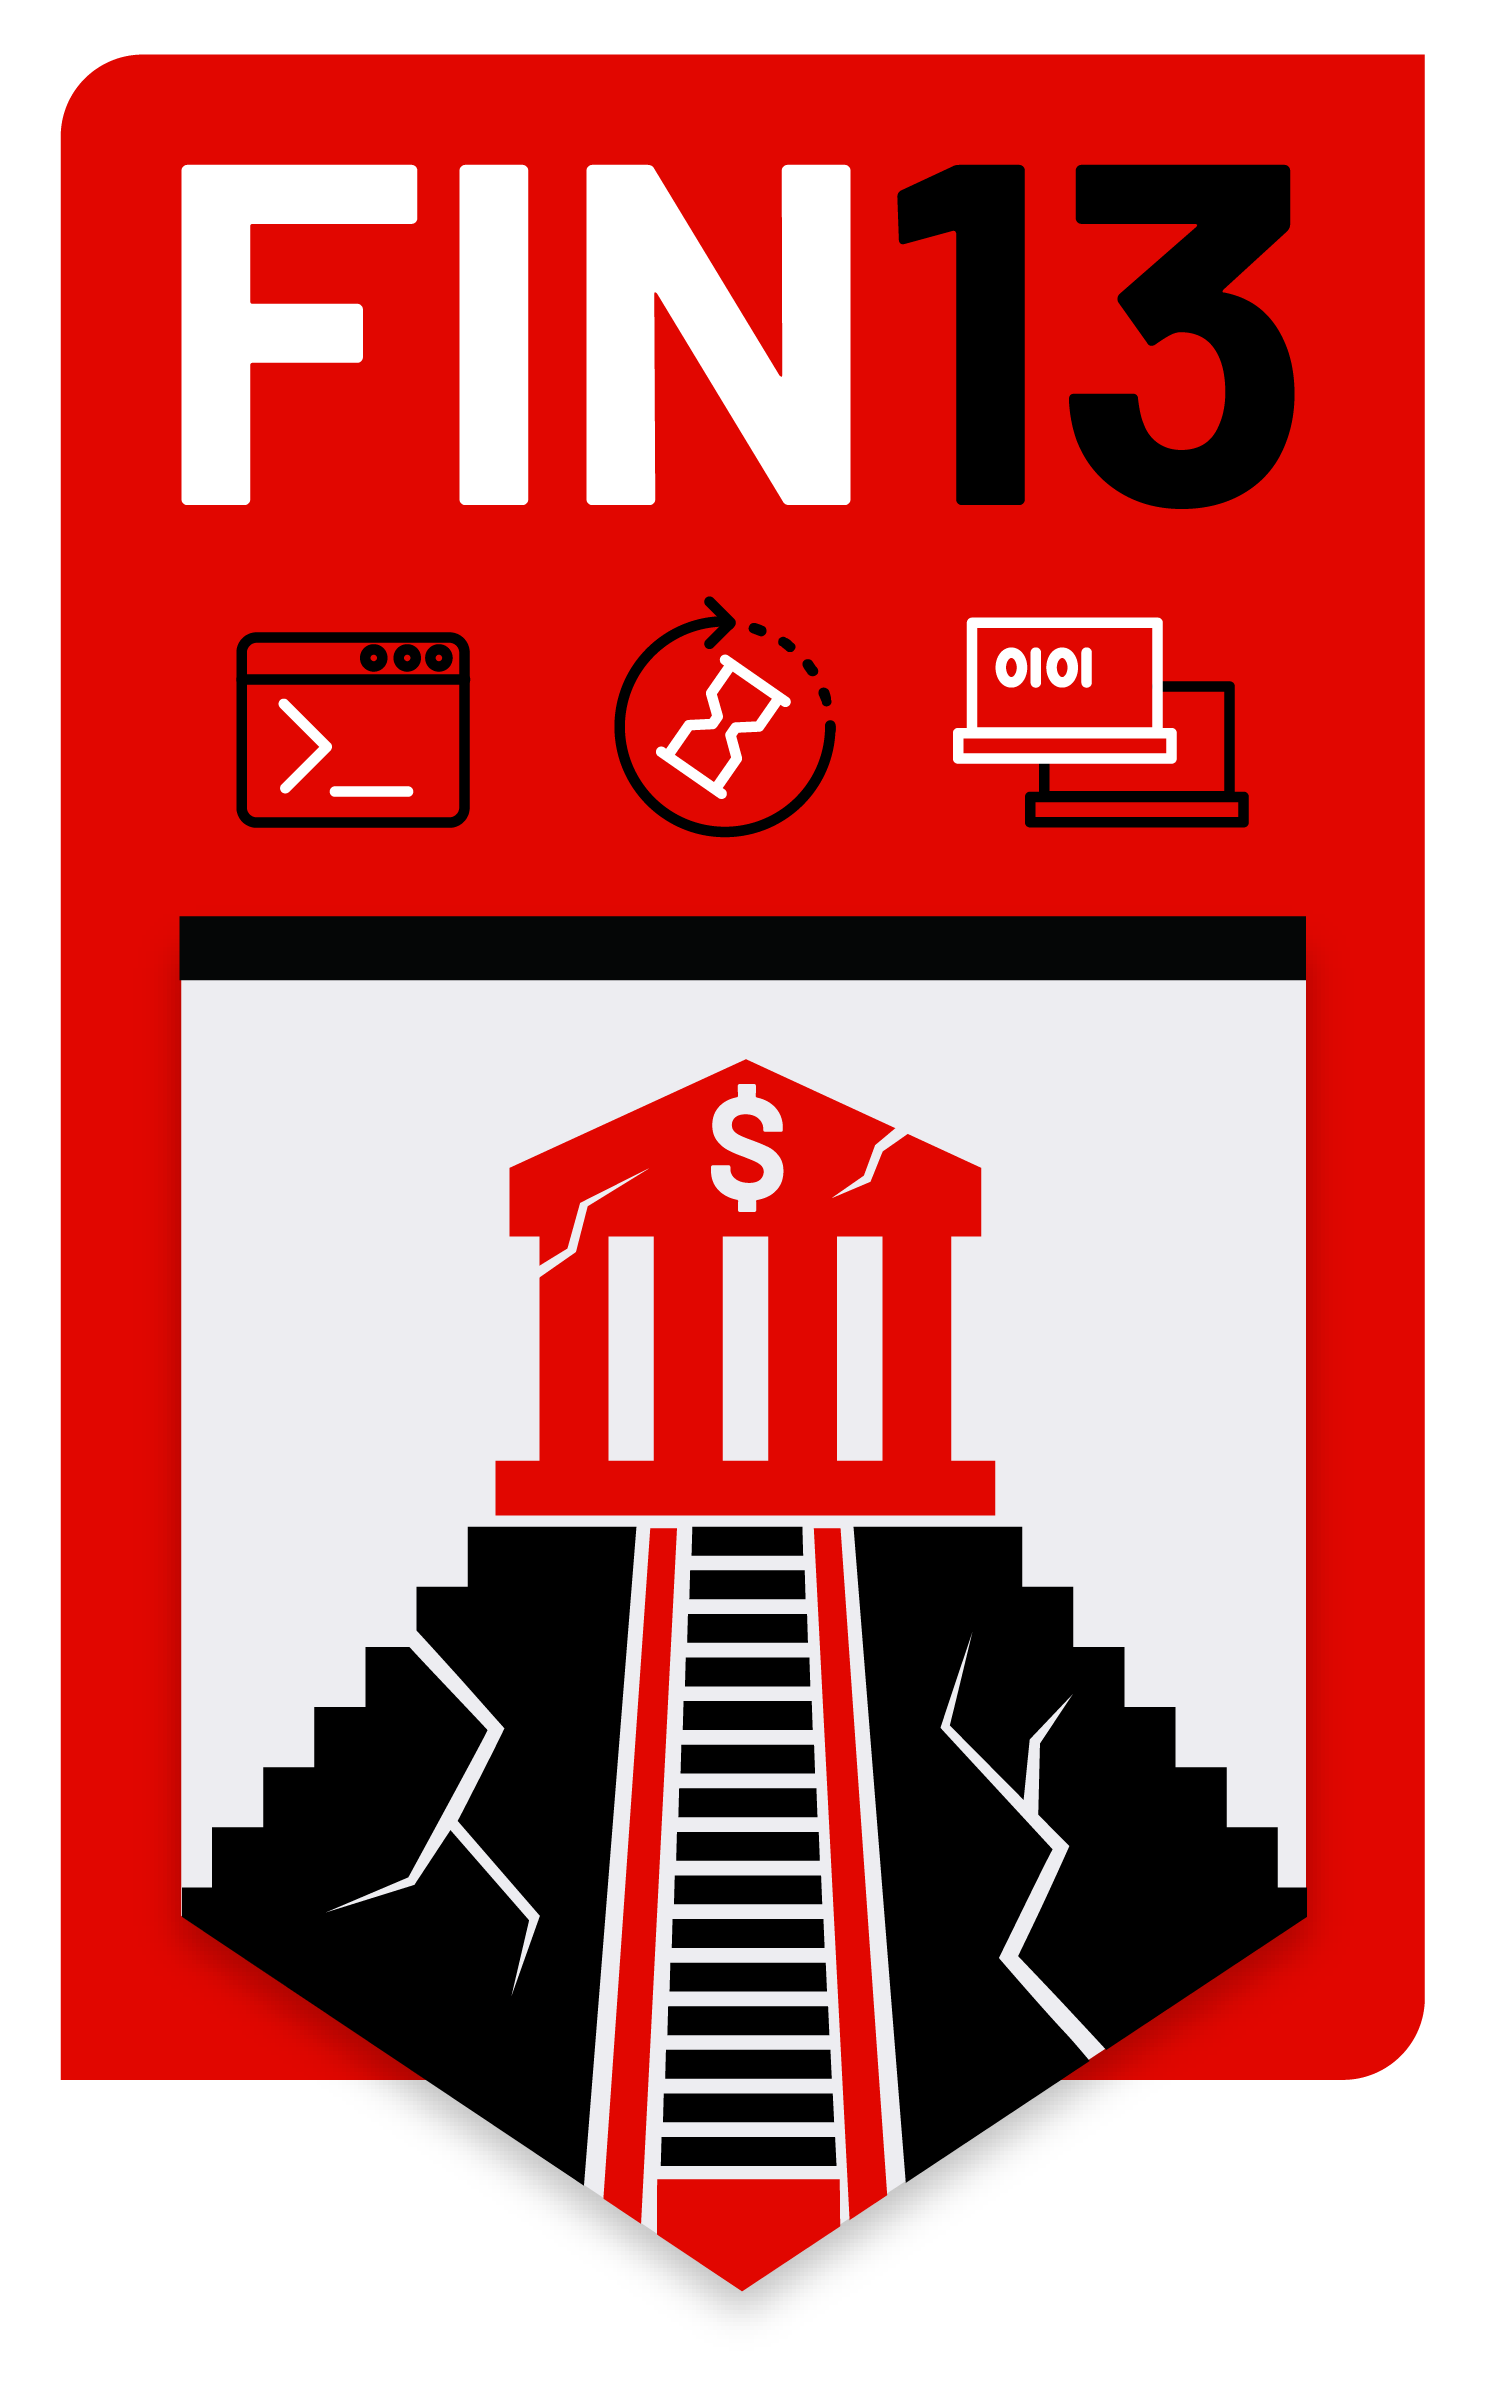 fin13 logo